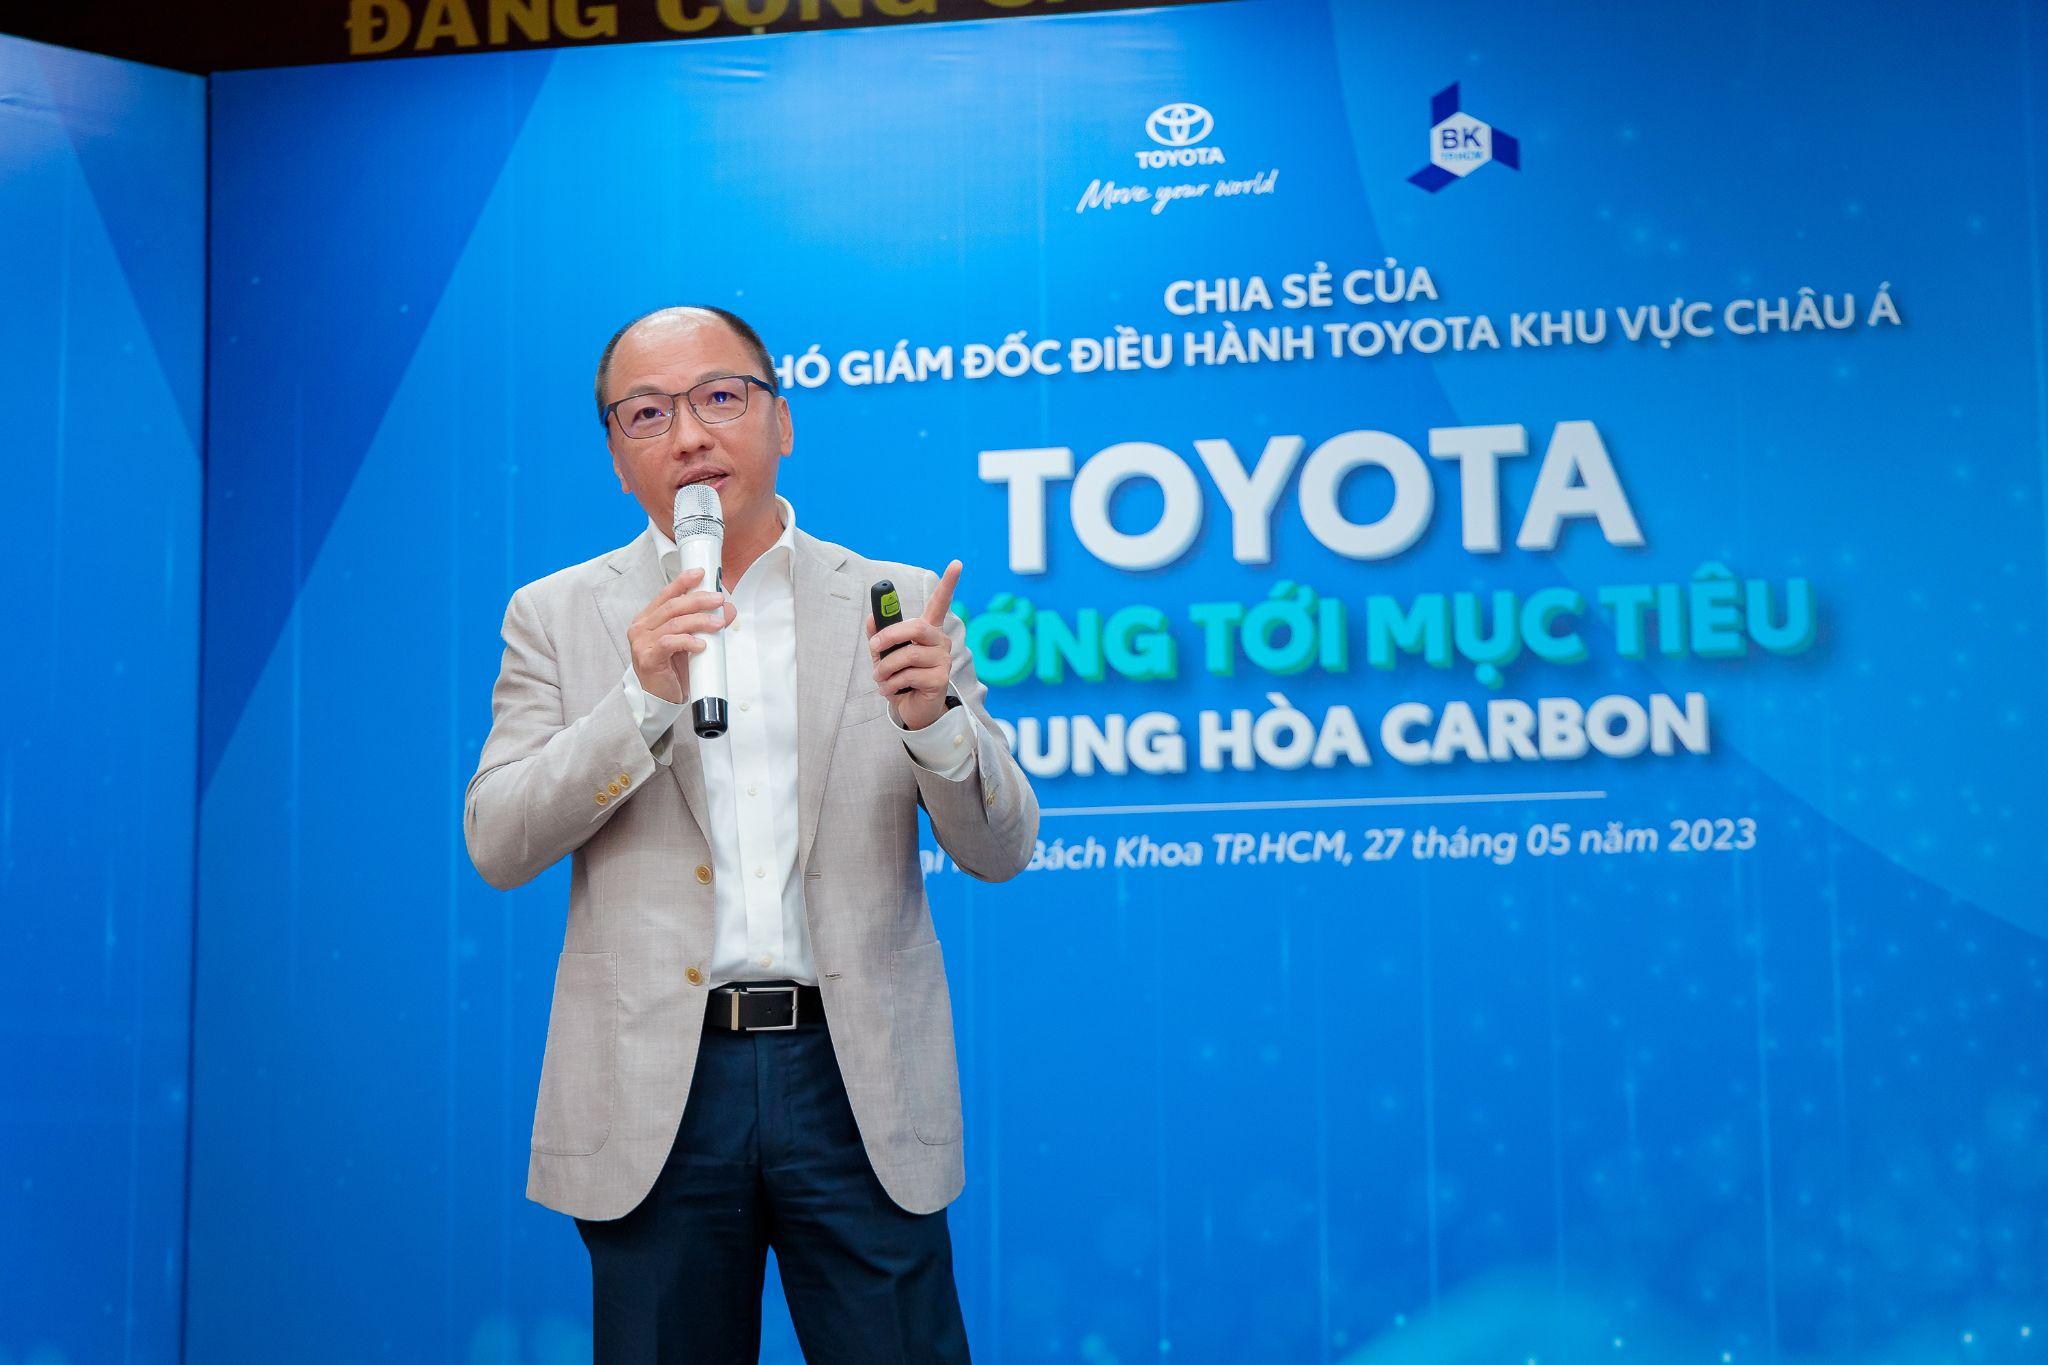 Tiếp cận đa chiều: Bước tiến mạnh mẽ của Toyota trong giảm phát thải CO2 - 1